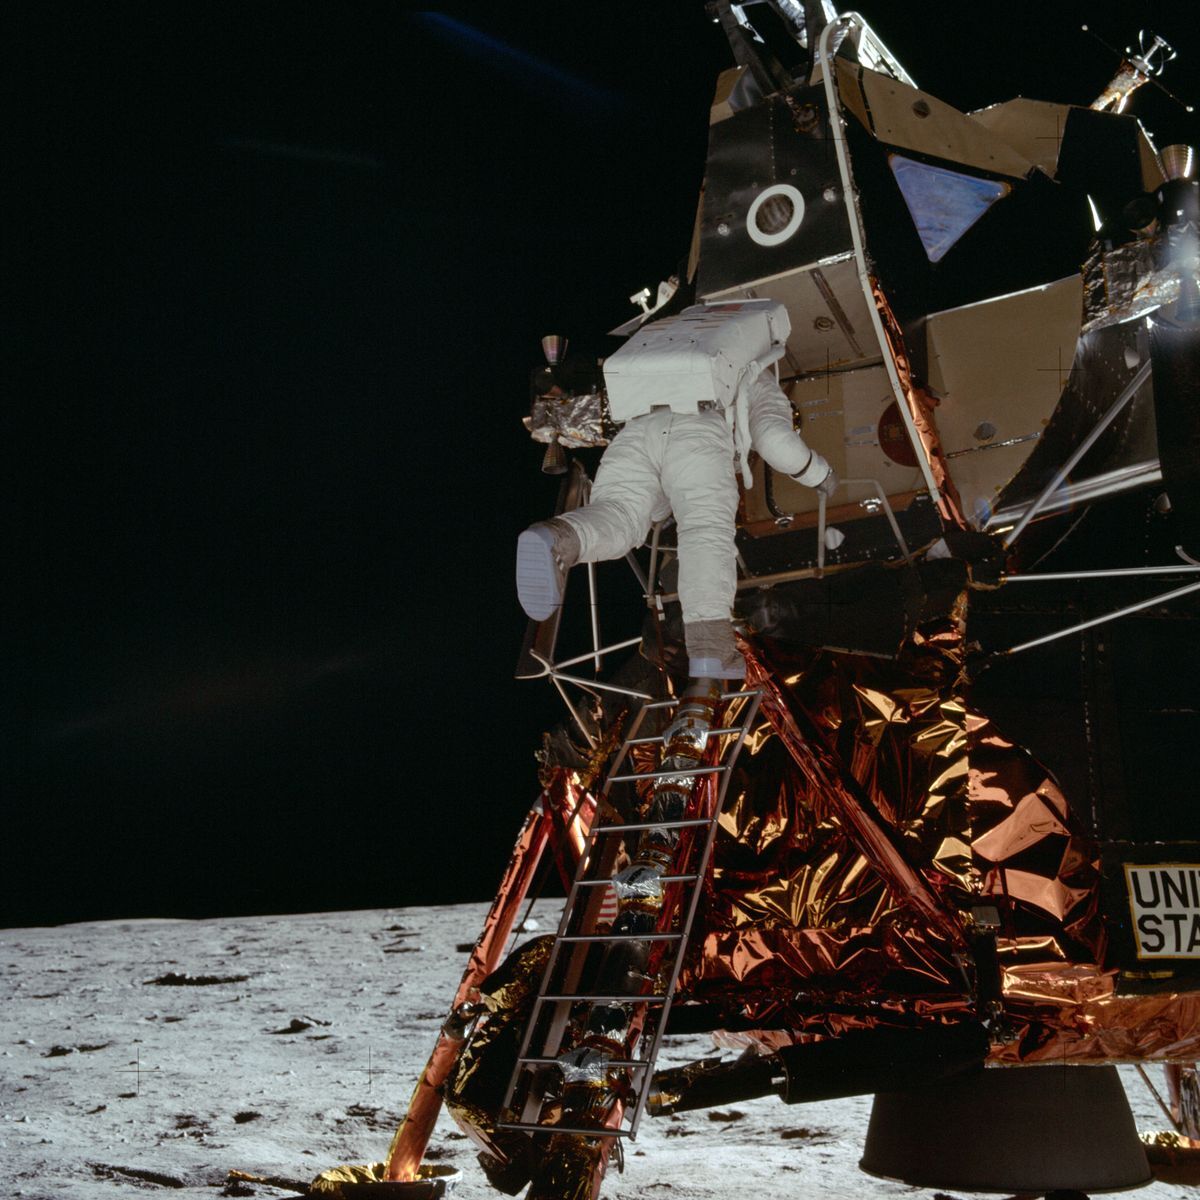 L’alunissage de 1969 a été un énorme exploit d’ingéniosité, d’intelligence et de détermination humaines qui a émerveillé et inspiré des générations. Plus de cinq décennies après que Neil Armstrong, Edwin «Buzz» Aldrin et Michael Collins ont accompli leur mission historique Apollo 11, nous sommes toujours fascinés par ce qui s’est passé avant, pendant et après ce premier «petit pas pour l’homme». Découvrez cet événement important en 20 images et anecdotes.